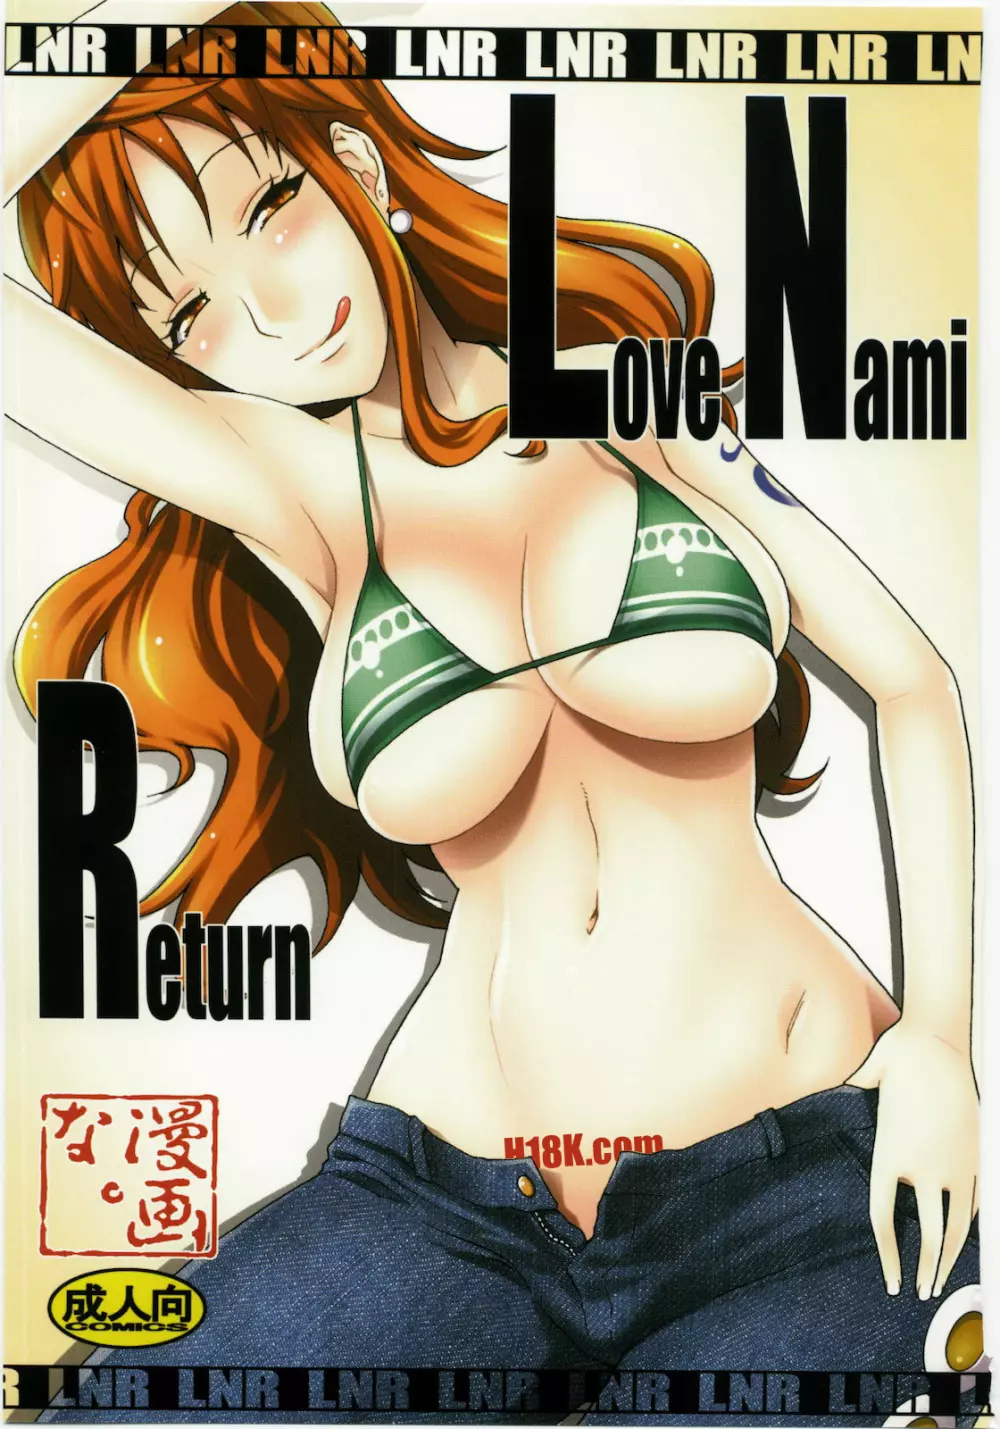 LNR - Love Nami Return - page1